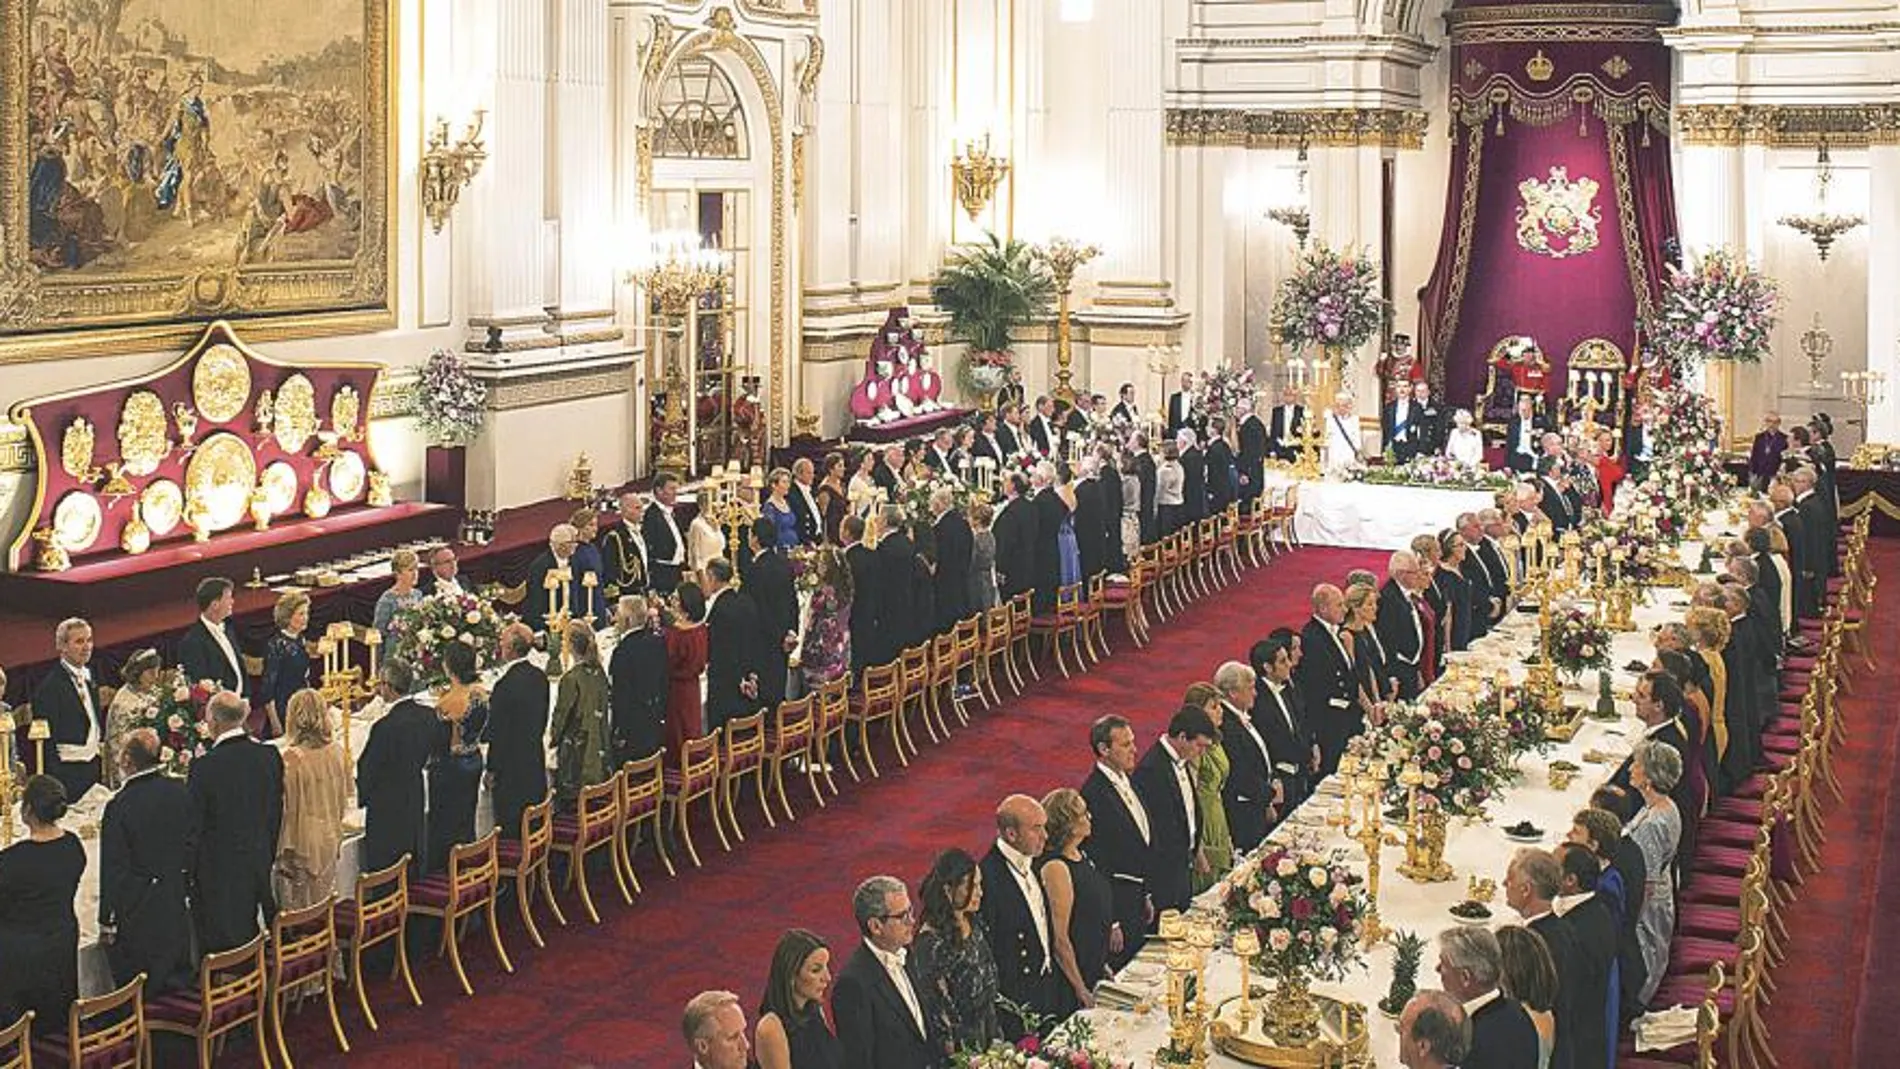 Isabel II presidió la mesa presidencial junto a su marido, los Reyes, el Príncipe de Gales y la duquesa de Cornualles, los duques de Cambridge y Theresa May, entre otros